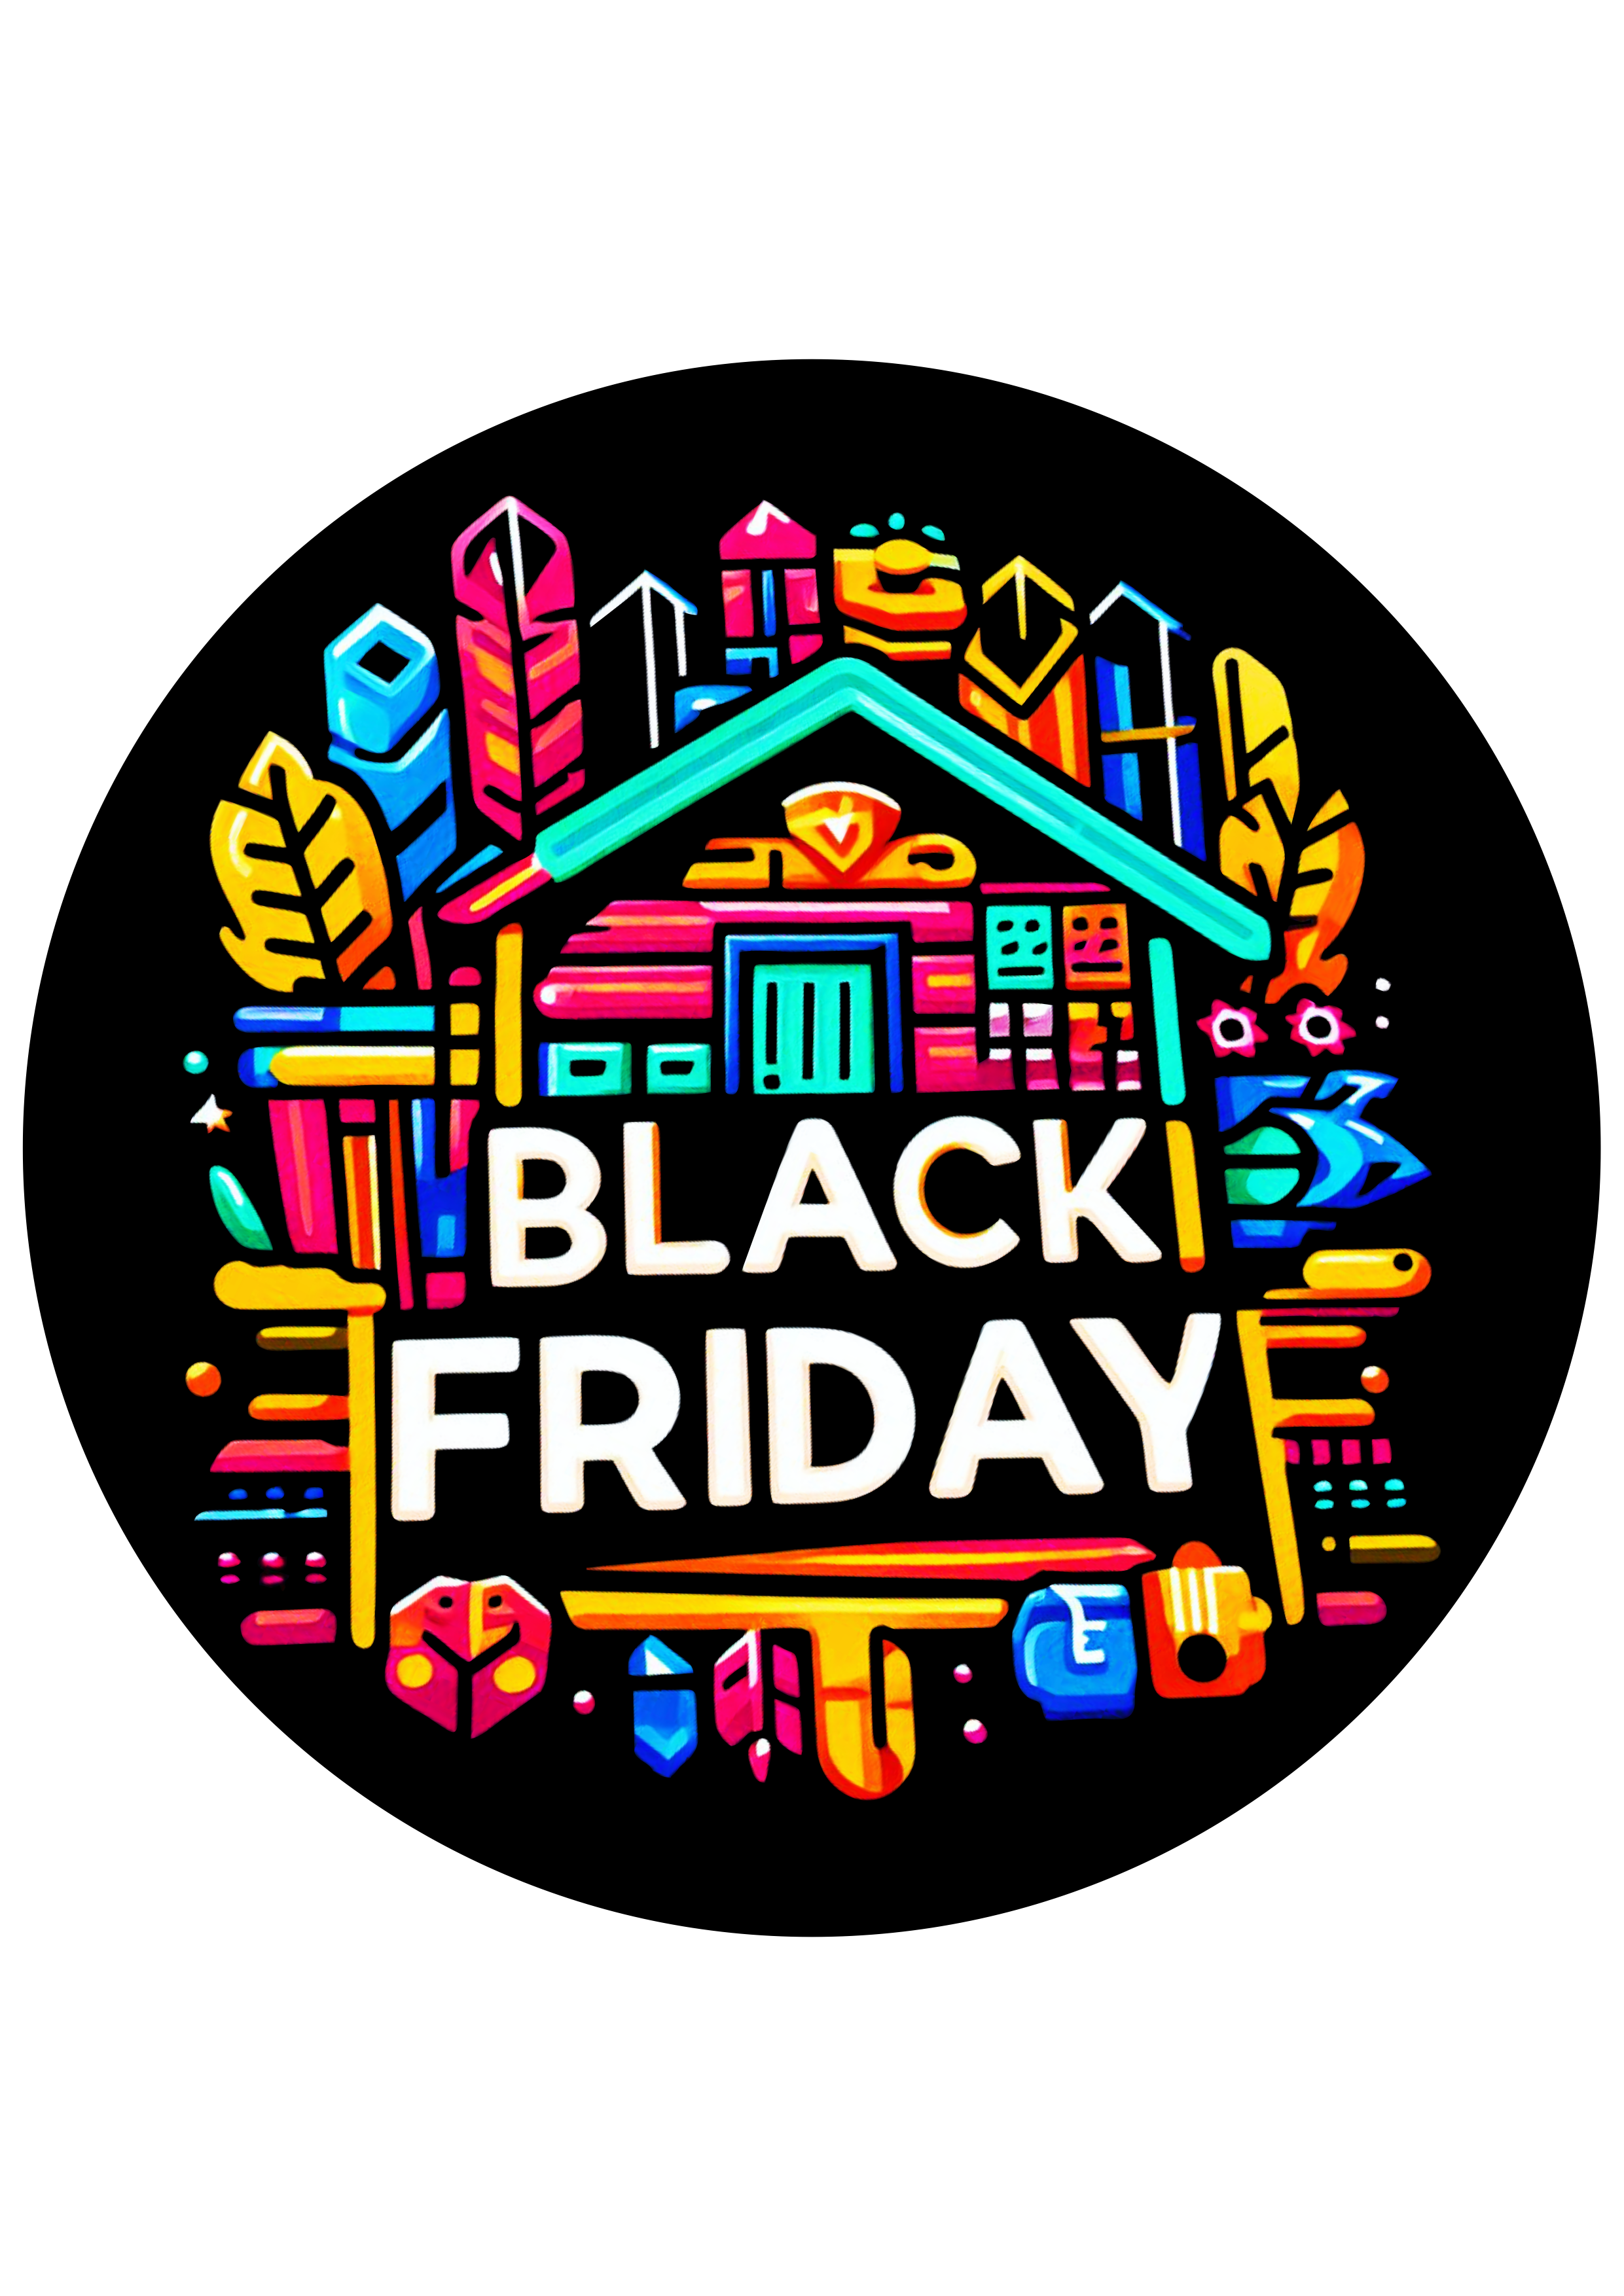 Black Friday tags para decoração design artes gráficas free logomarca adesivo tag redonda png